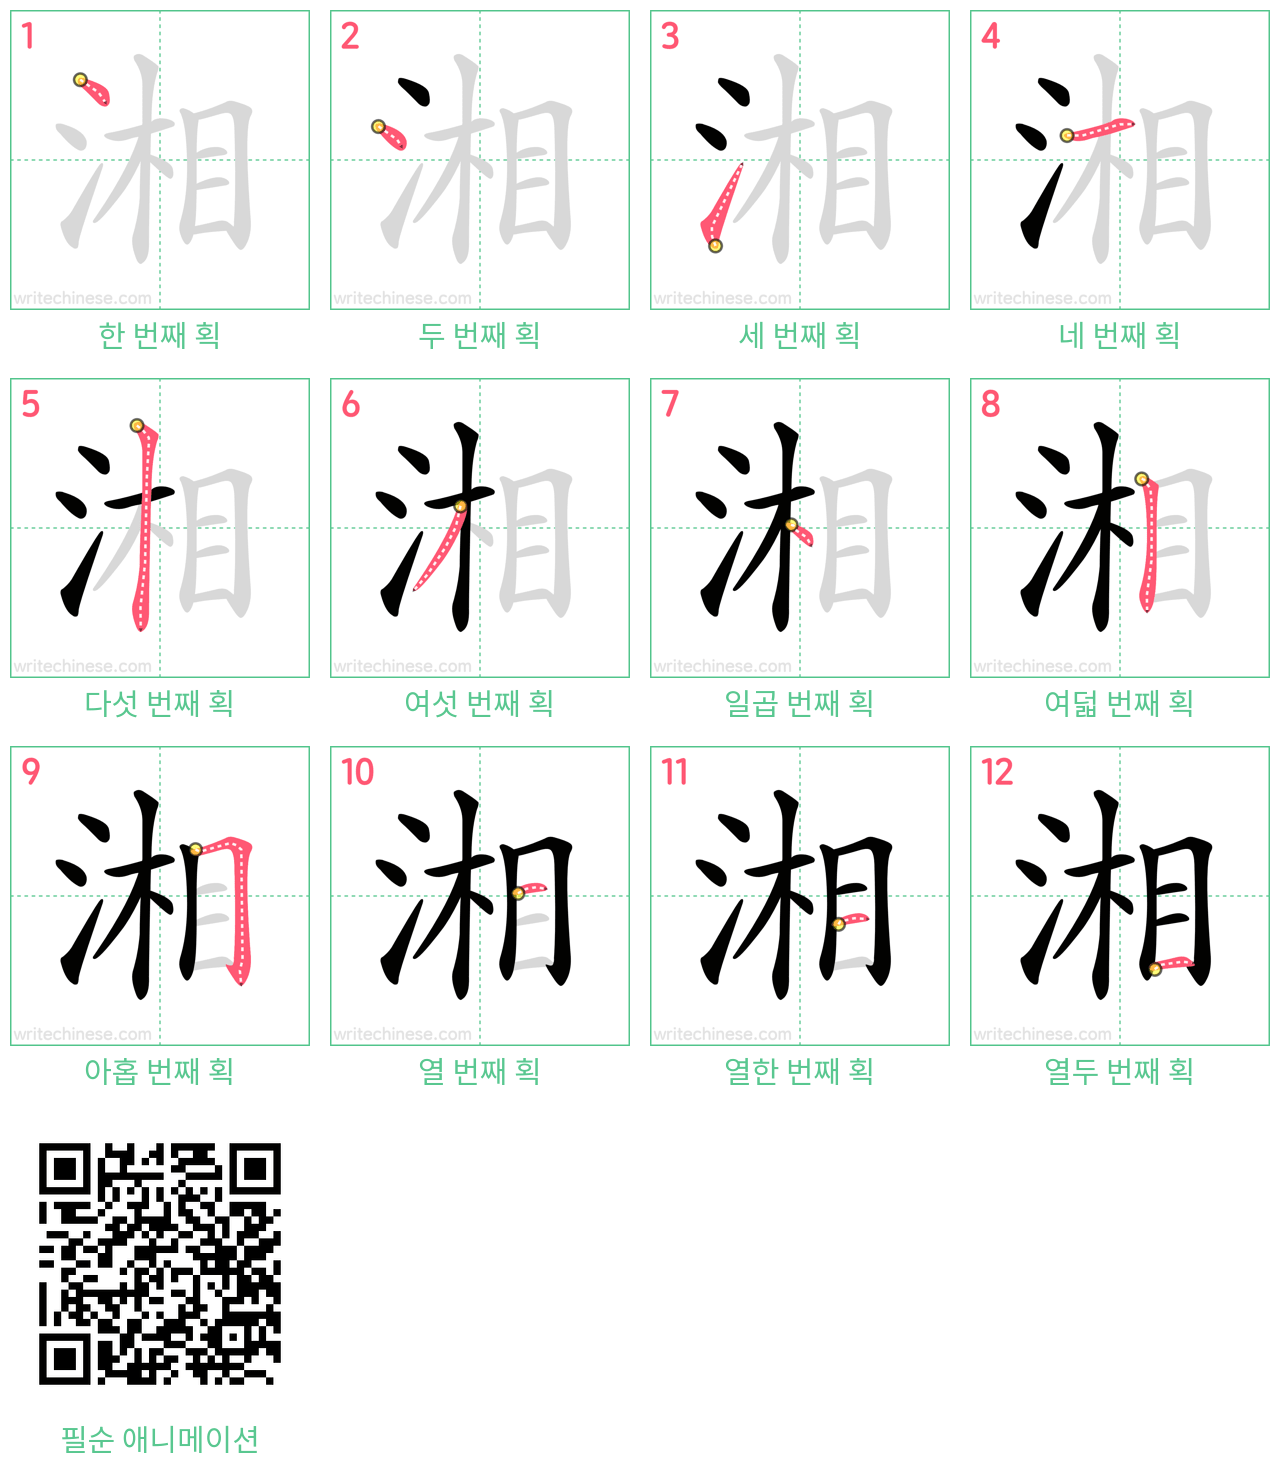 湘 step-by-step stroke order diagrams